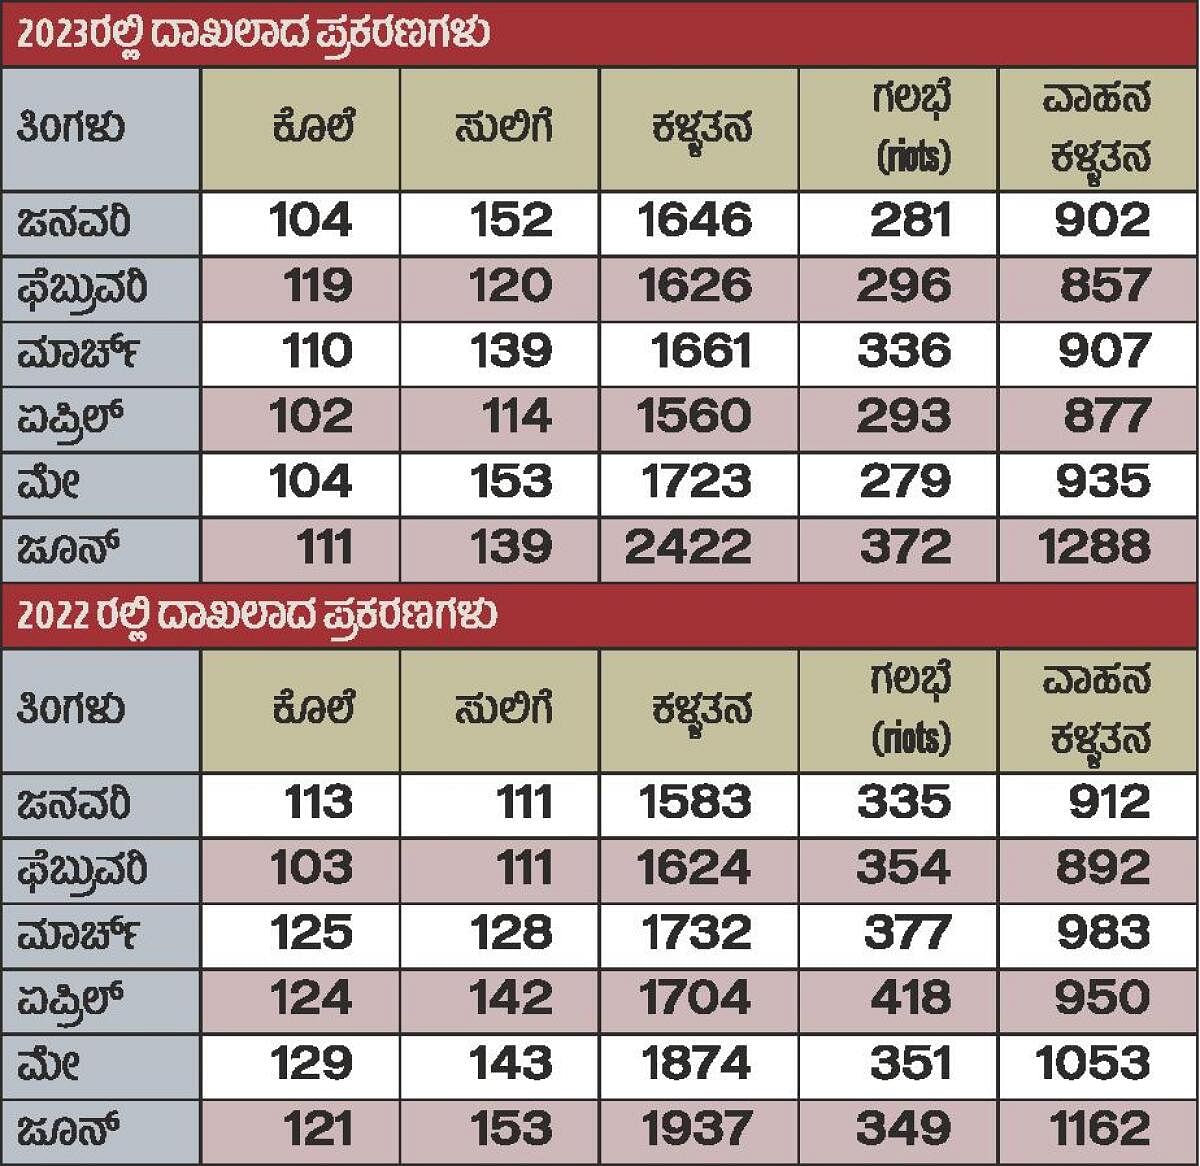 ರಾಜ್ಯದಲ್ಲಿ ಆರು ತಿಂಗಳಲ್ಲಿ 650 ಕೊಲೆ, 1,857 ಗಲಭೆಗಳು